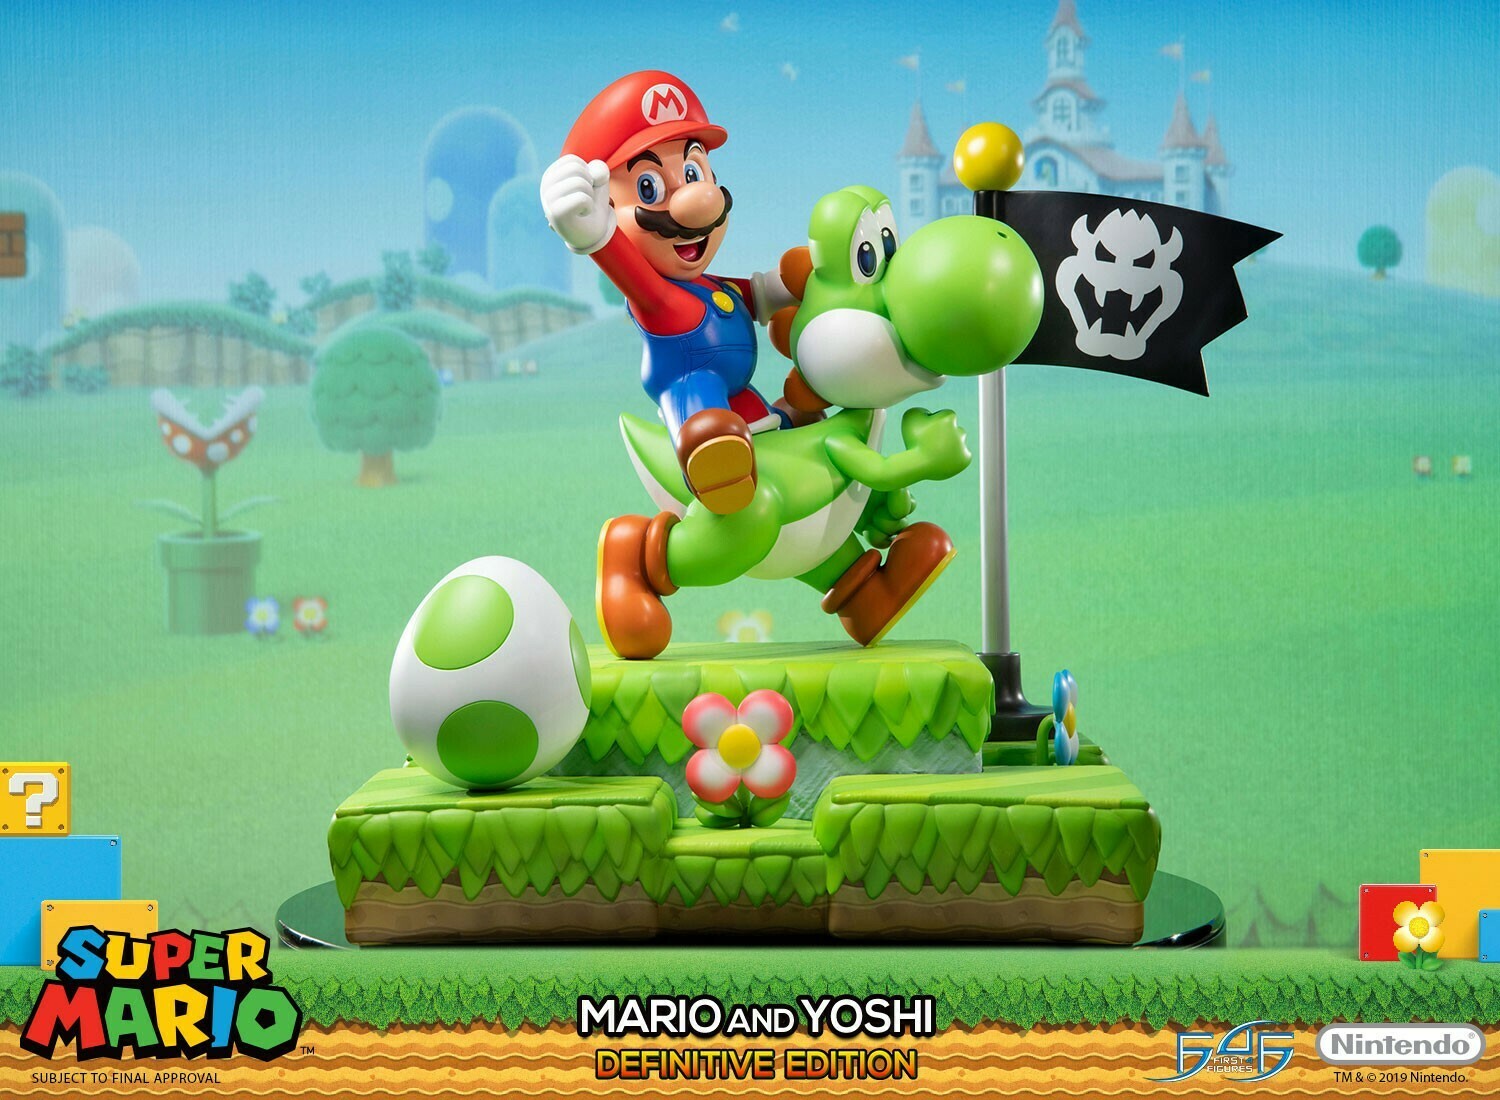 F4F - Mario and Yoshi EX Edition